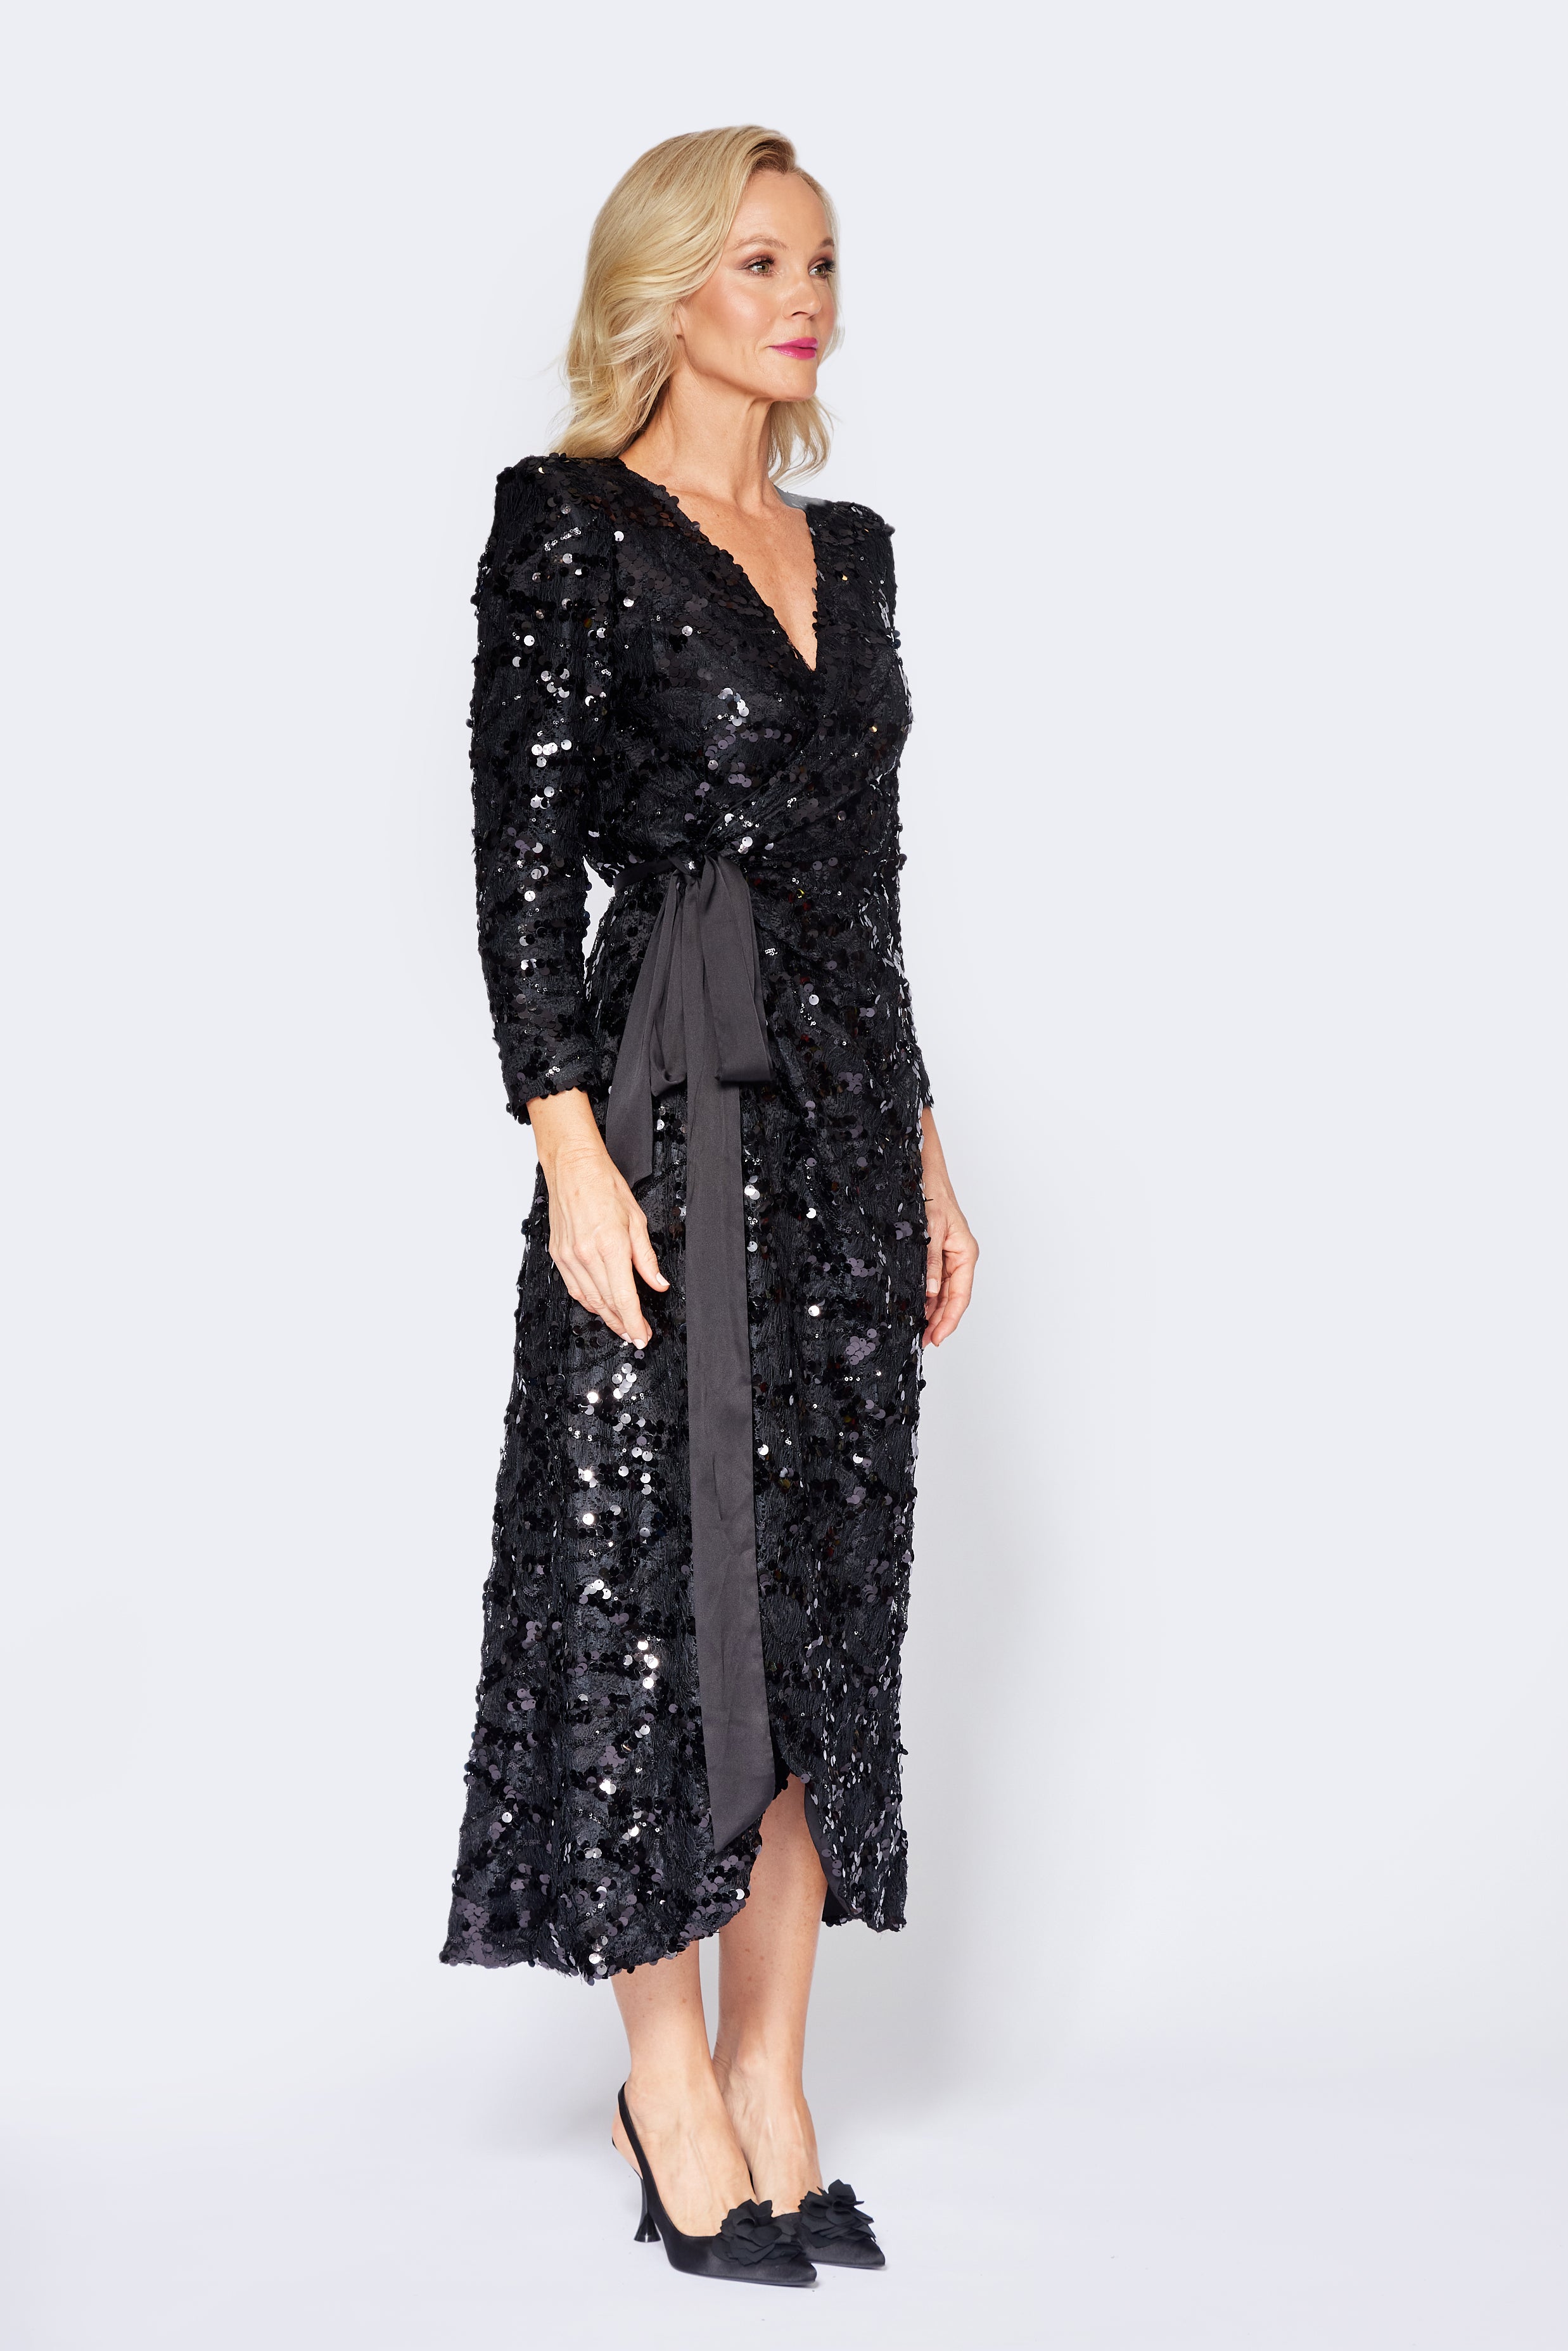 Black Lace/Sequin Wrap Dress